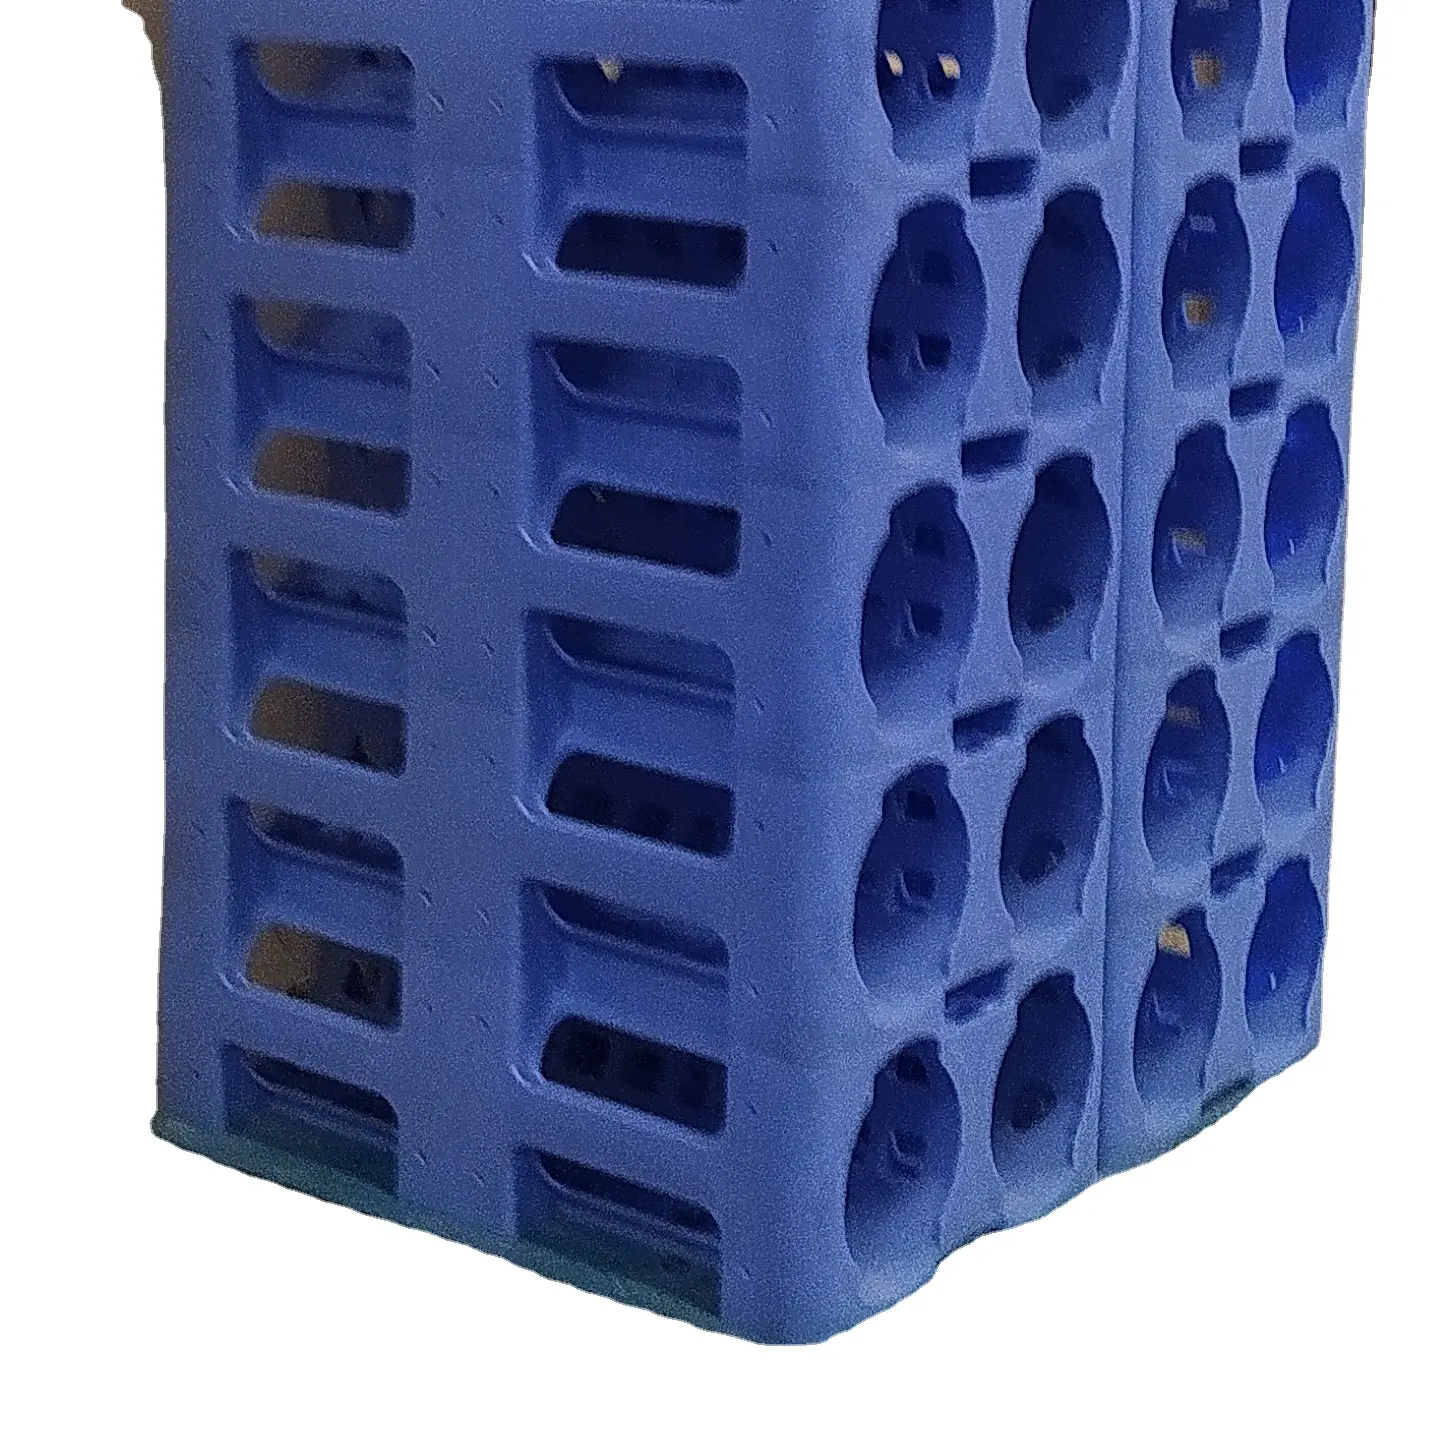 Hoge Kwaliteit Met Moderne Look Food Grade Iso 9001:2015 Gecertificeerde Maagdelijke Hdpe Waterfles Rack Plastic Producten Voor 5 Gallon